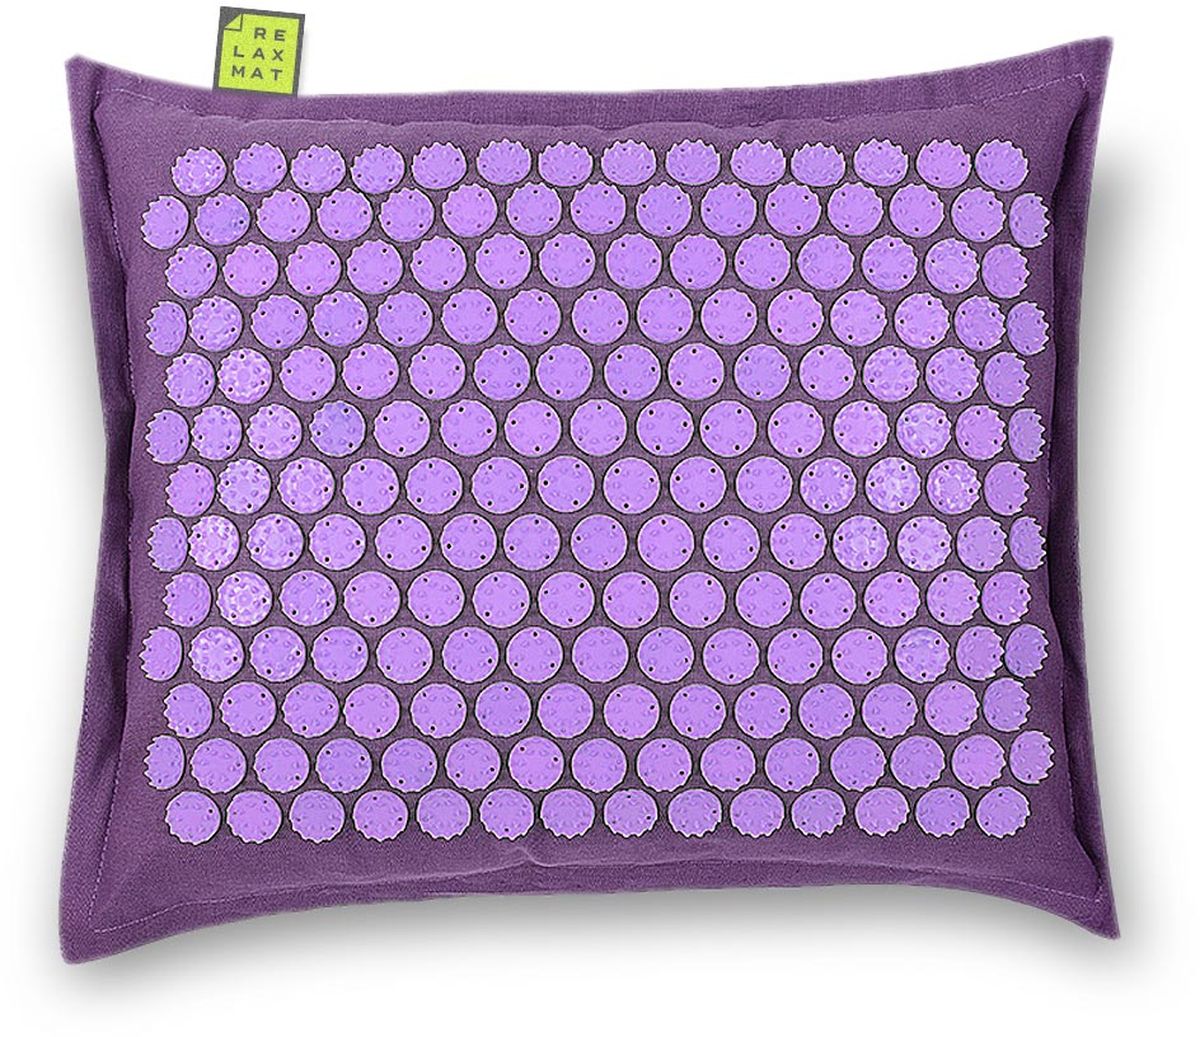 Relaxmat Массажная подушка, цвет: сиреневый, фиолетовый